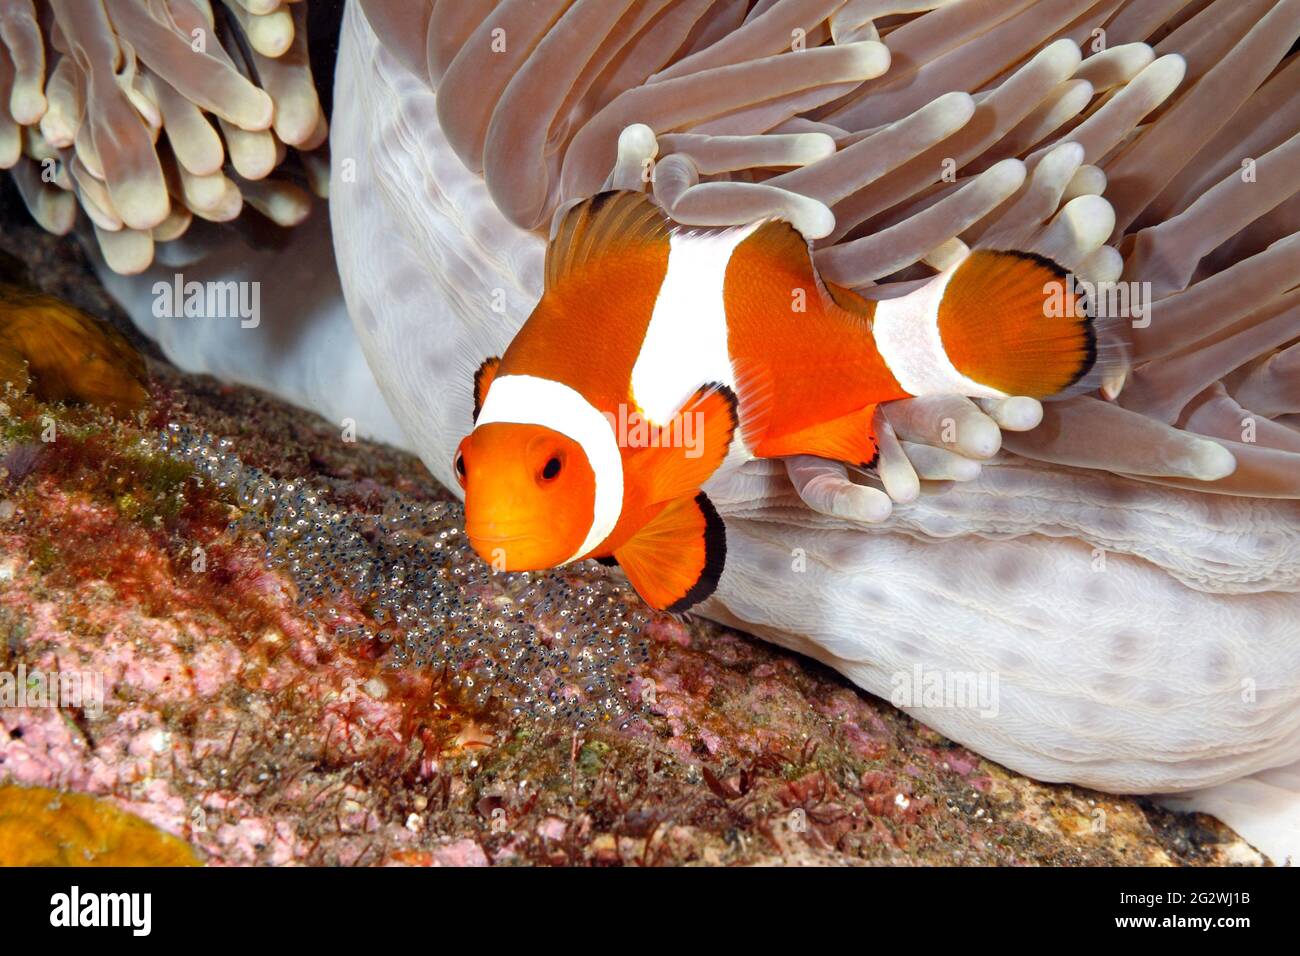 Le corégone d'Anemonefish Amphiprion ocellaris portant des oeufs pondus à la base de l'hôte magnifique Anemone, Heterotis magifica. Tulamben, Bali, Indonésie. Banque D'Images